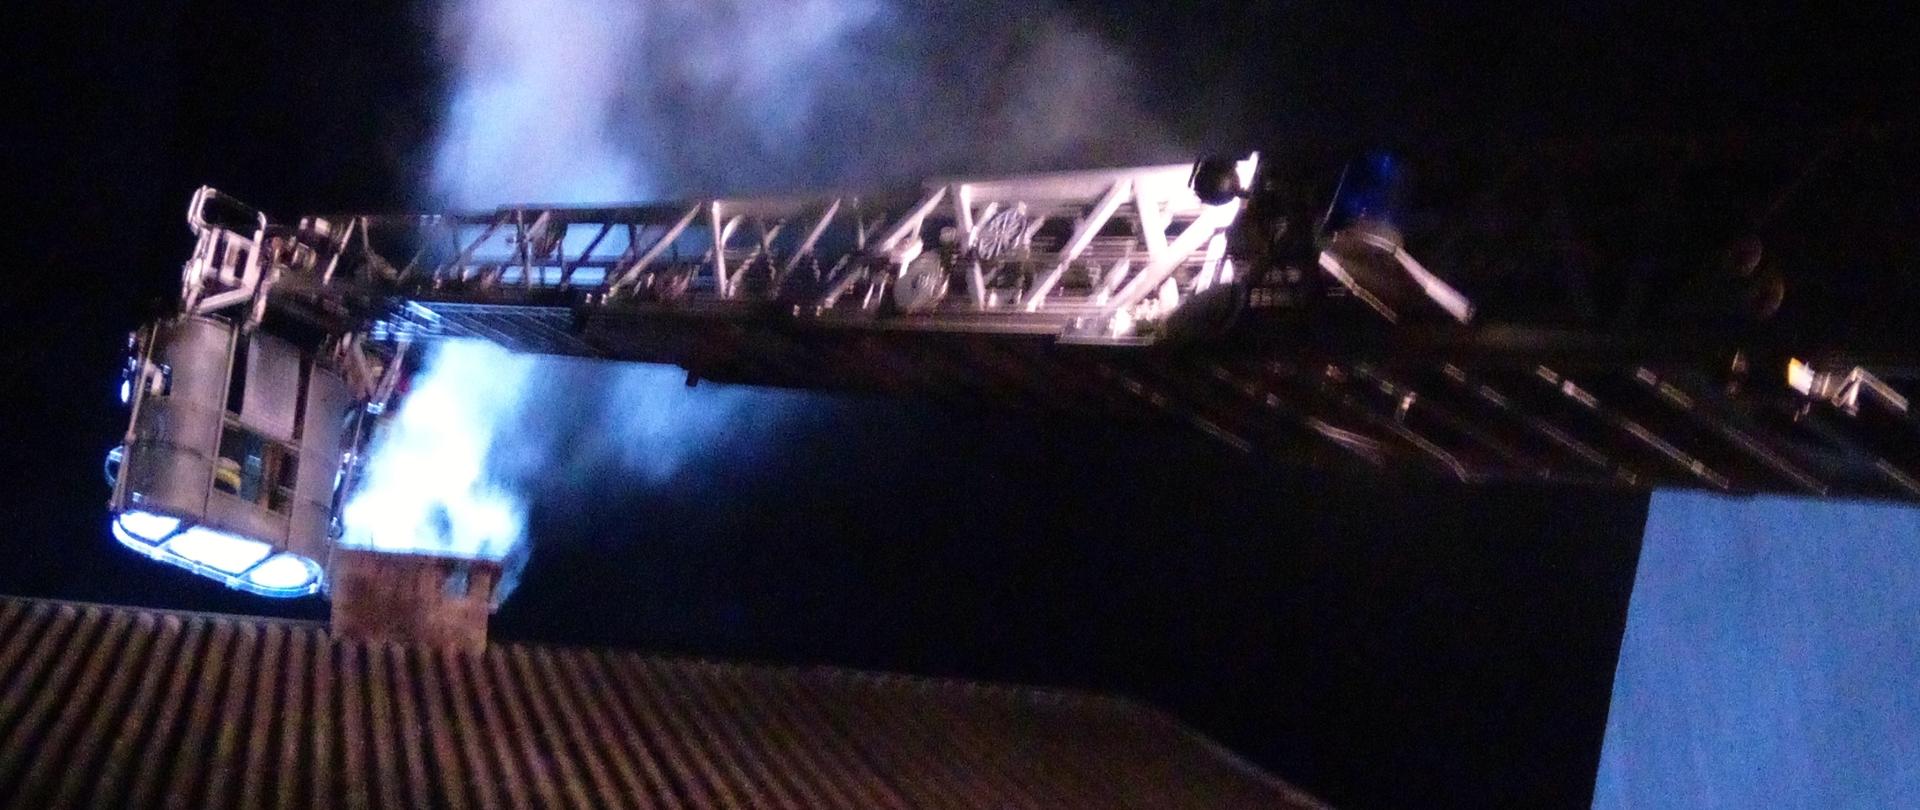 Zdjęcie przedstawia strażaków gaszących pożar sadzy w kominie z kosza drabiny mechanicznej. W tle widać wydobywający się dym z komina. Dach budynku jest oświetlony